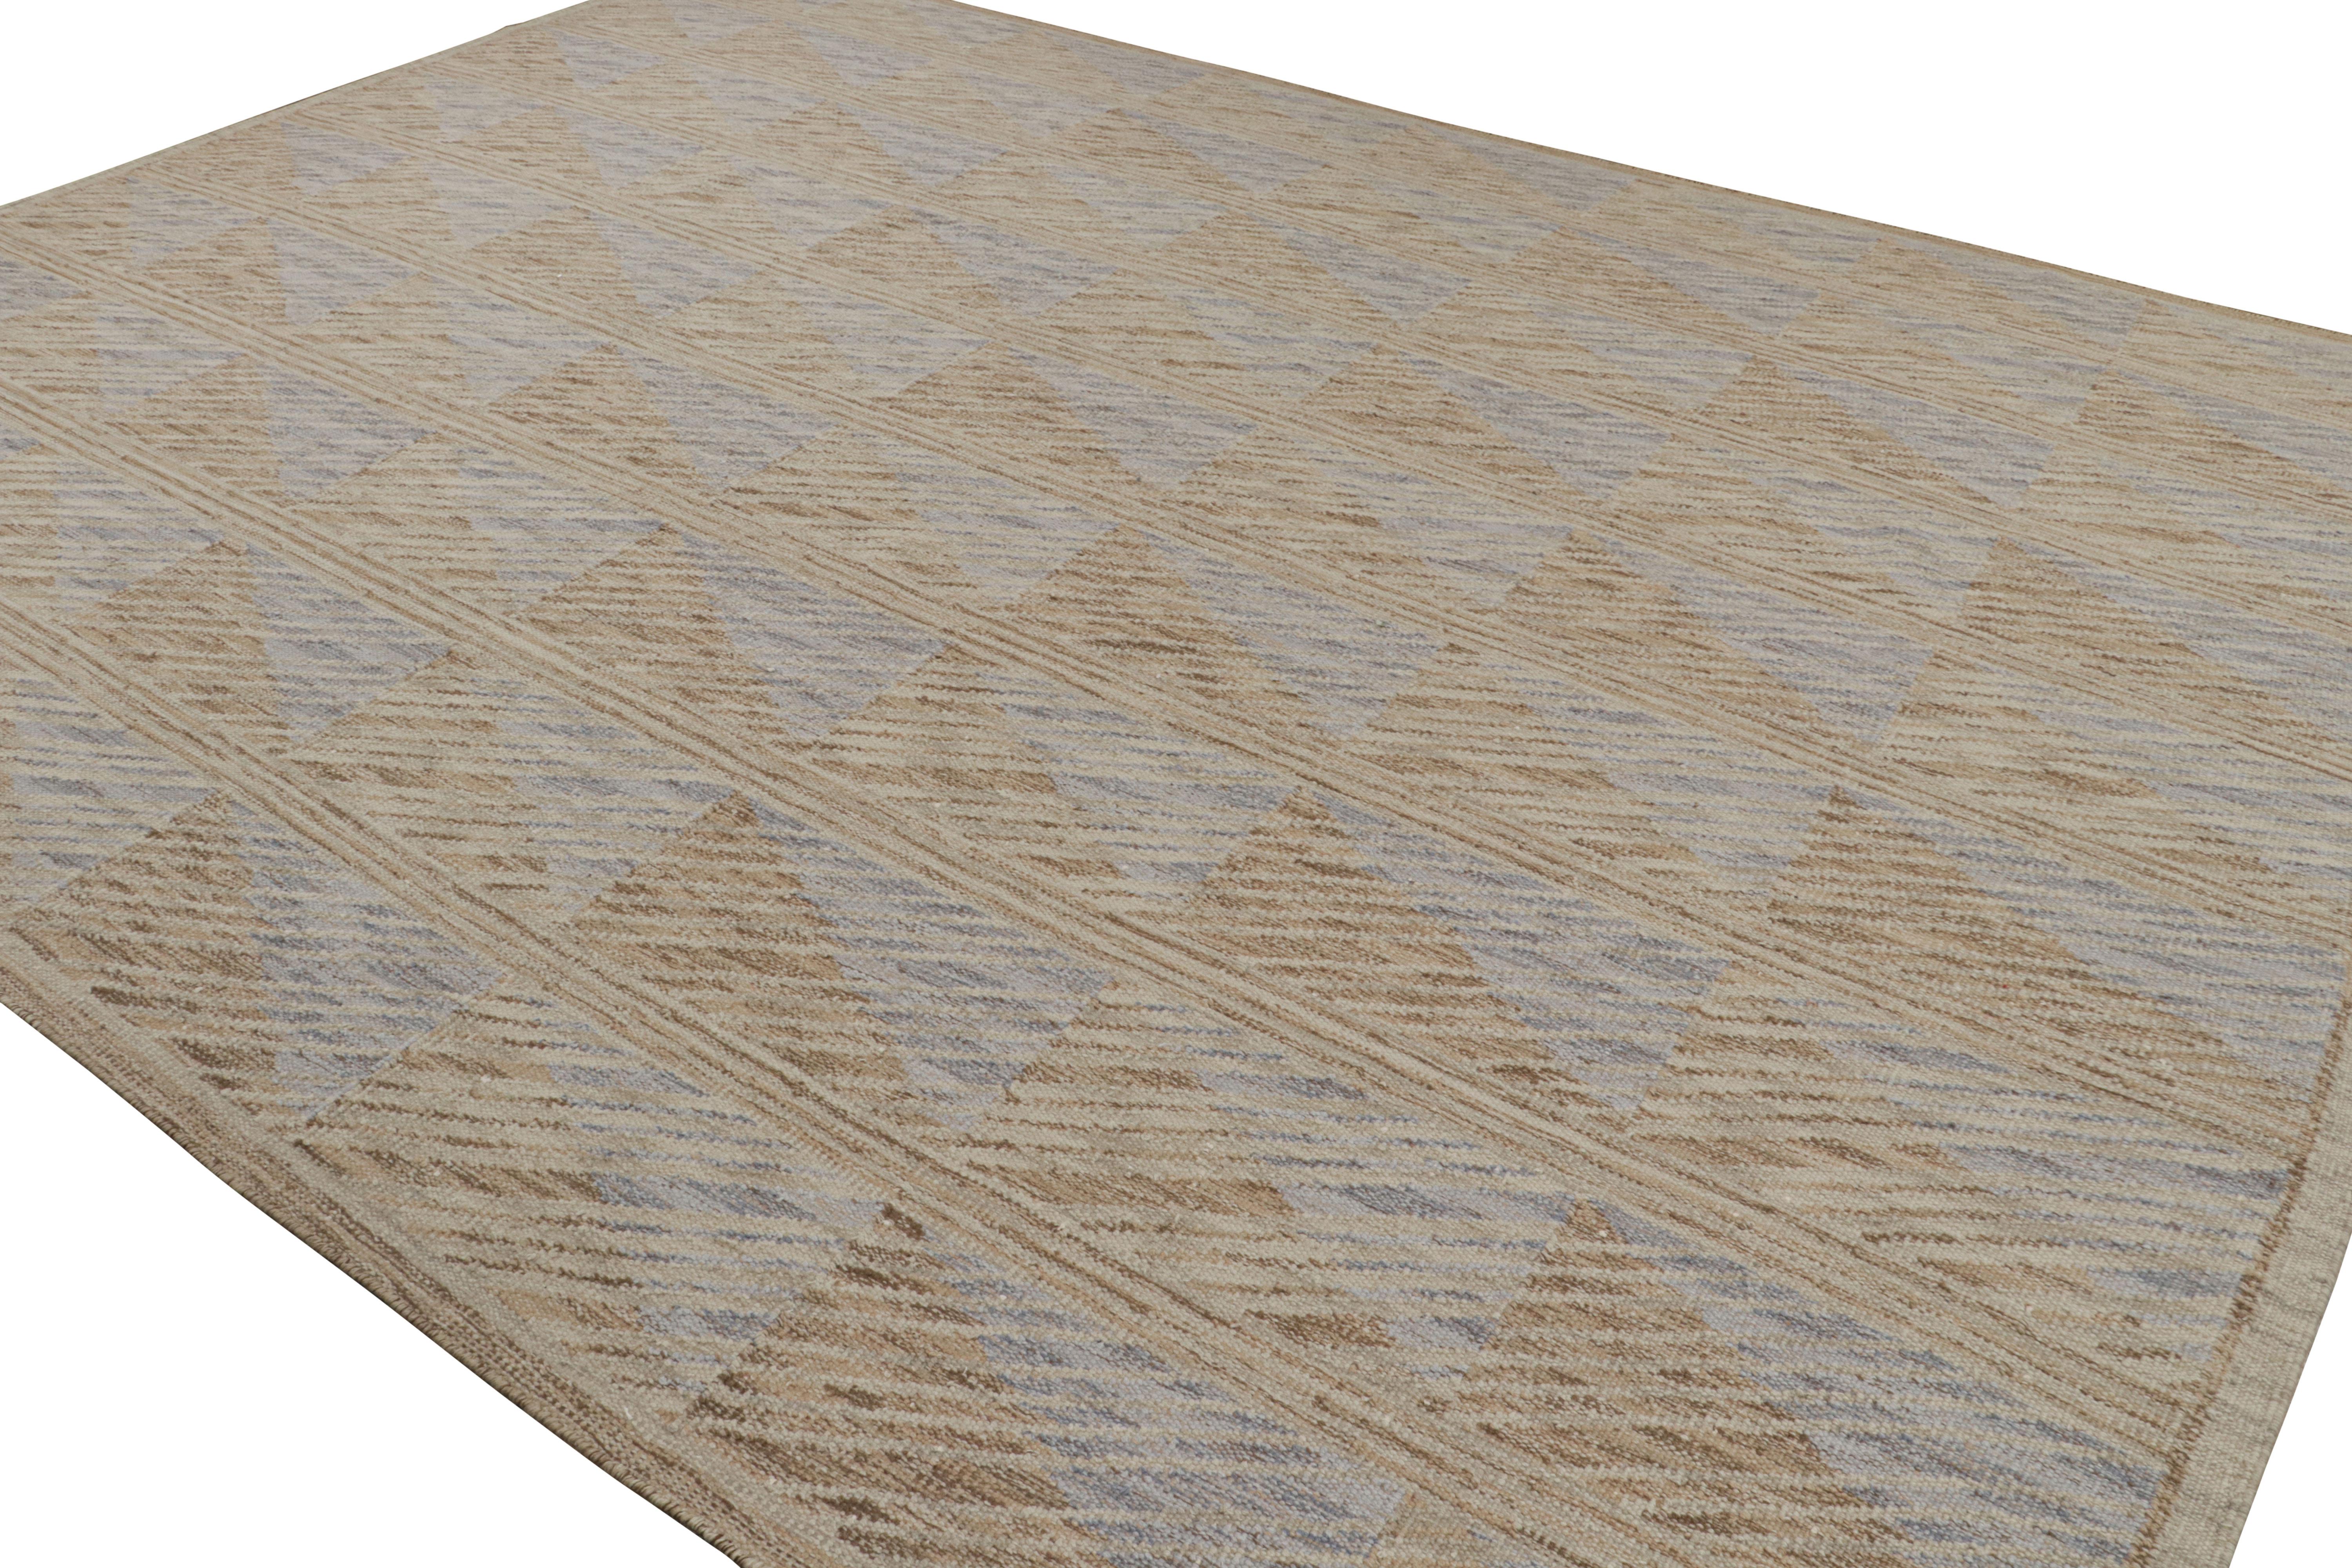 Dieser schwedische Teppich im Format 12x15 gehört zu den Flachgeweben der skandinavischen Teppichkollektion von Rug & Kilim. Handgewebt aus Wolle und ungefärbten Naturgarnen, ist das Design an den schwedischen Minimalismus und die Hygge-Ästhetik